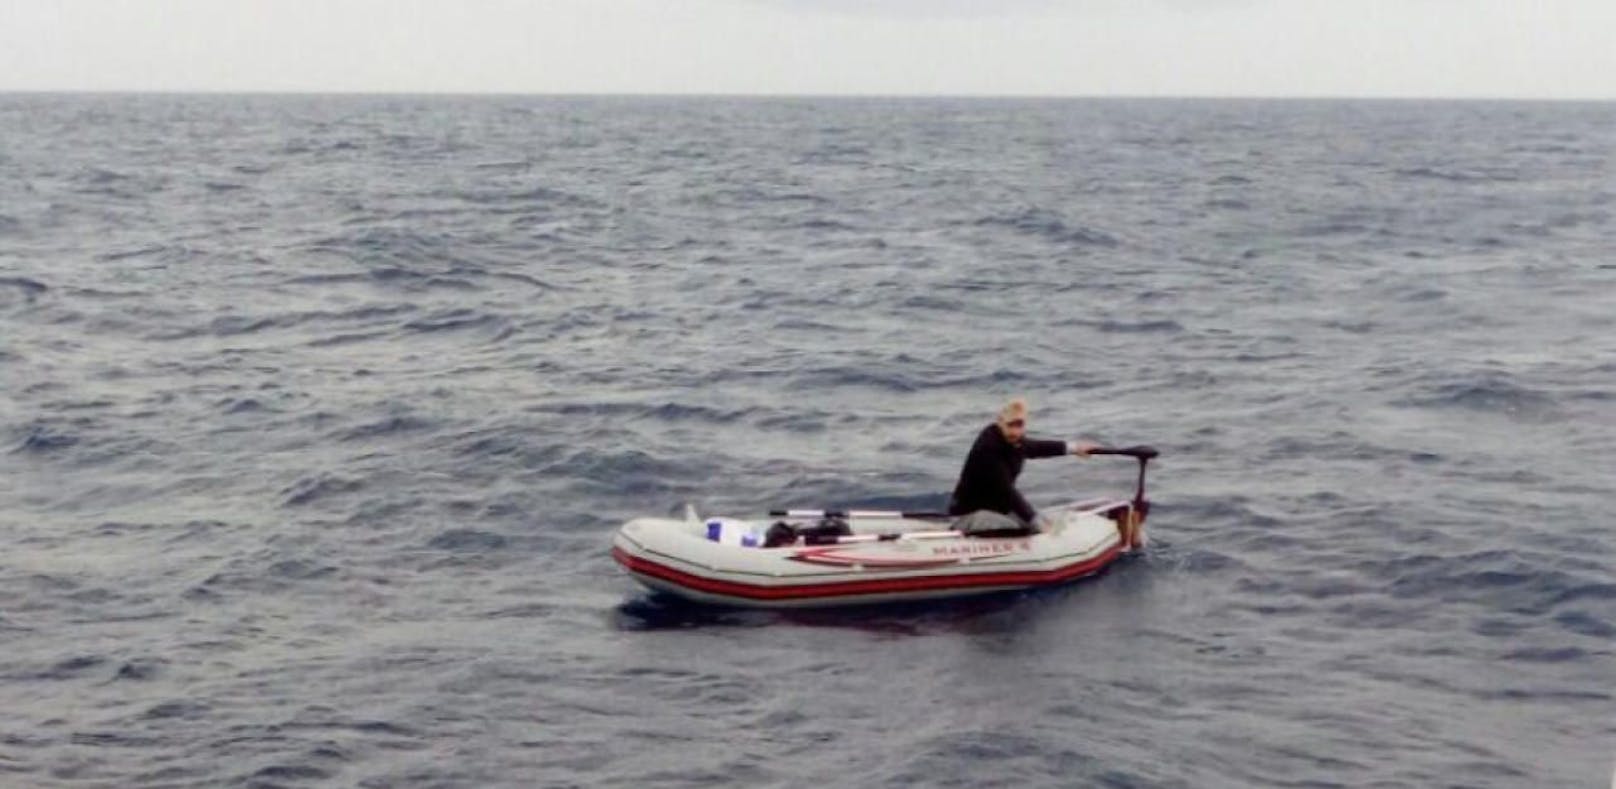 Mit dem Schlauchboot von Libyen nach Italien